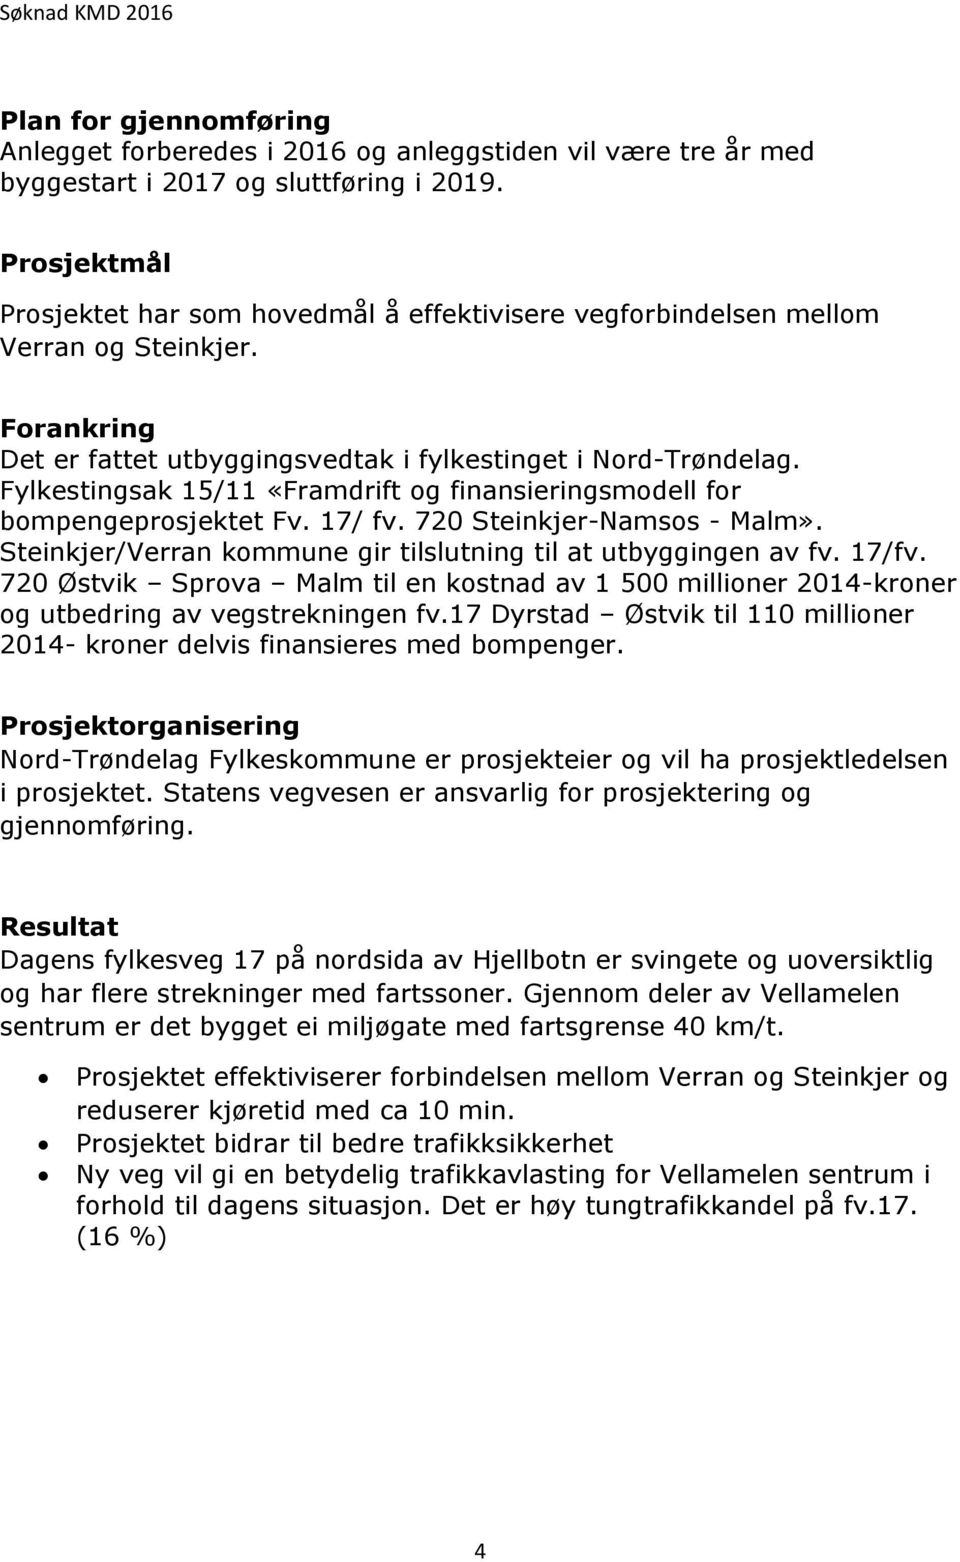 Fylkestingsak 15/11 «Framdrift og finansieringsmodell for bompengeprosjektet Fv. 17/ fv. 720 Steinkjer-Namsos - Malm». Steinkjer/Verran kommune gir tilslutning til at utbyggingen av fv. 17/fv.